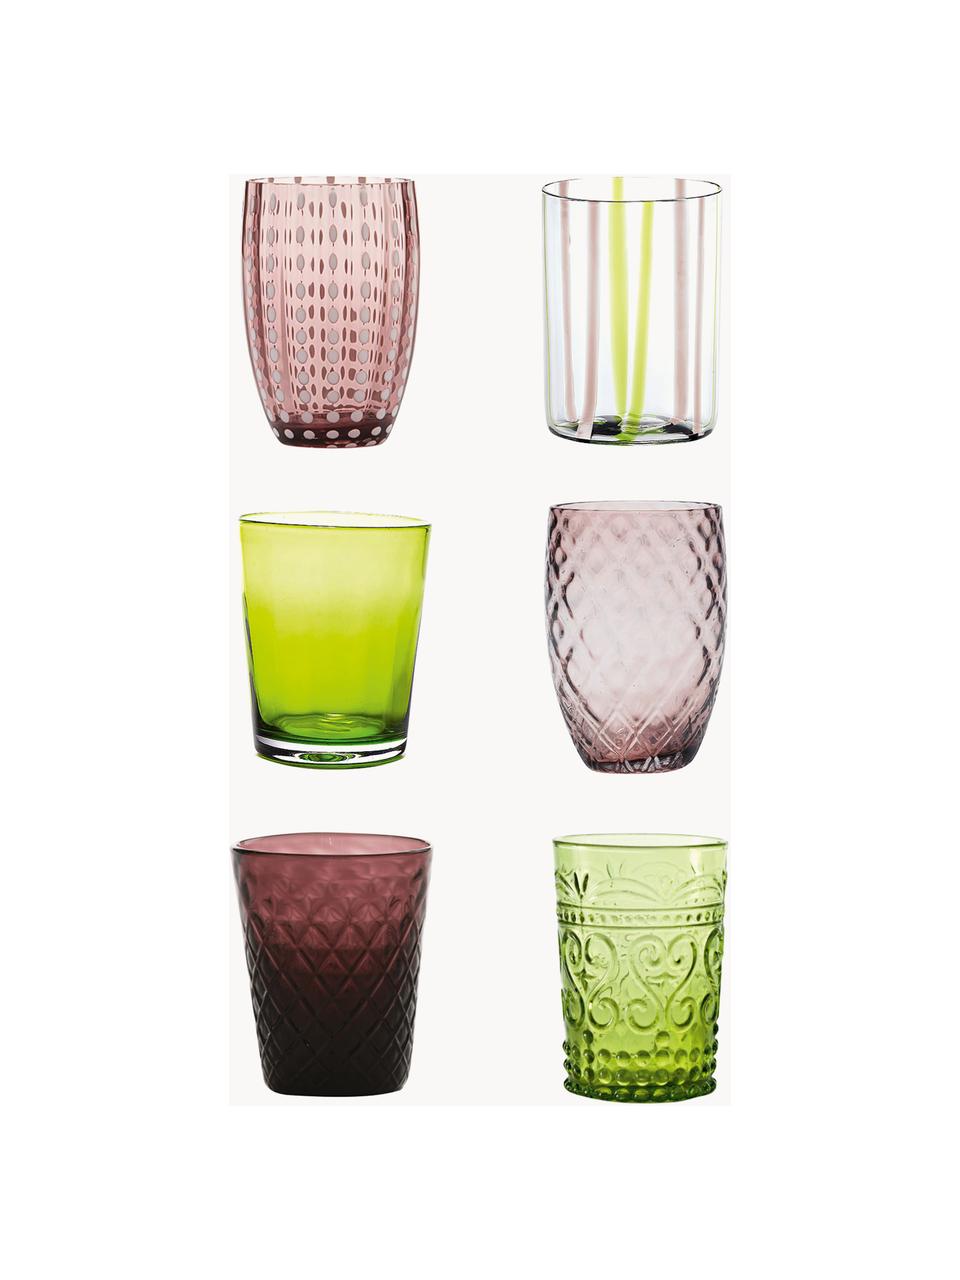 Handgefertigte Wassergläser Melting, 6er-Set, Glas, Hellgrün, Pflaume, Transparent, Set mit verschiedenen Grössen